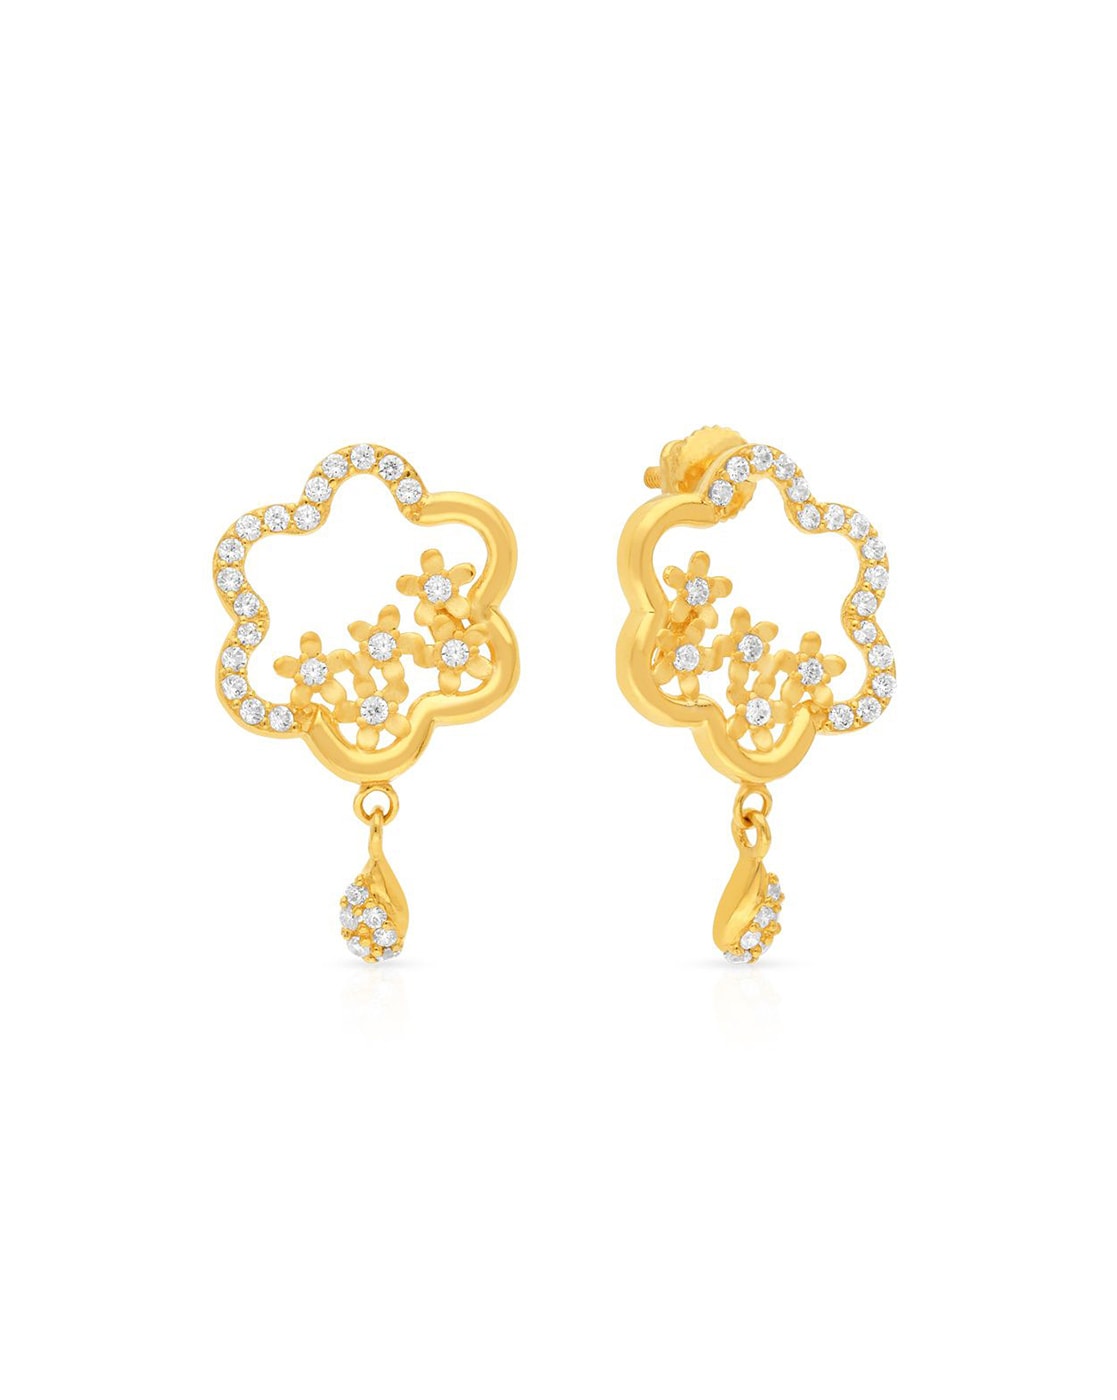 Wide Hoop Earrings, Chunky Creole Earrings, Large Golden Earrings, Large  Hoops, Medium Size, Huggie Earrings, Flat Hoop Earrings, Golden. - Etsy | Big  gold hoop earrings, Huggies earrings, Jewelry earrings hoops